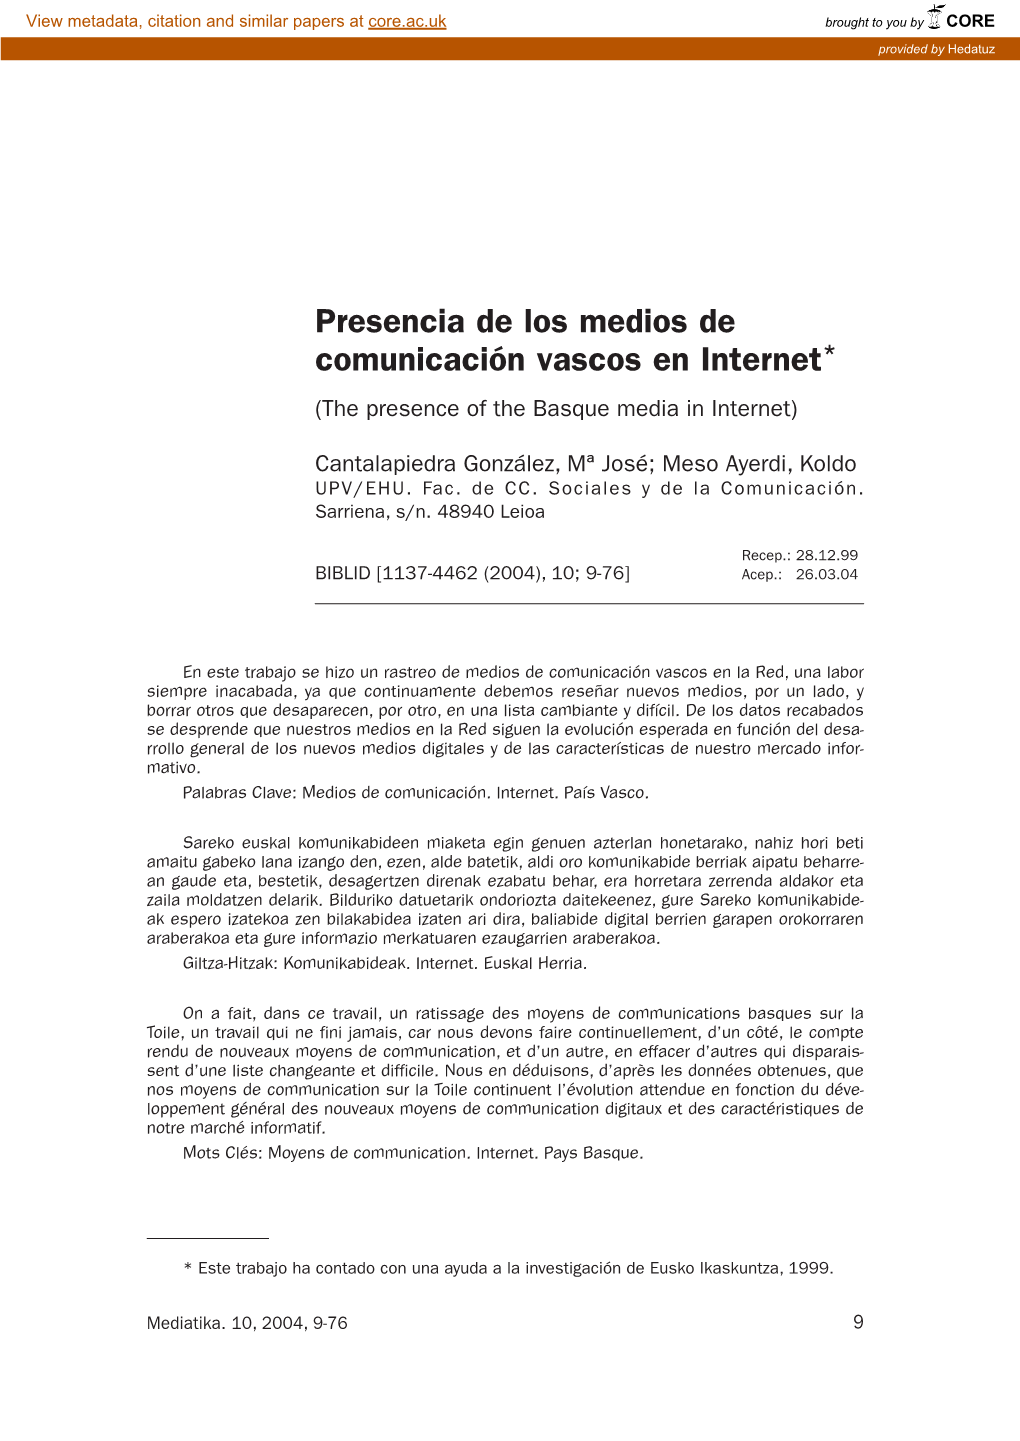 Presencia De Los Medios De Comunicación Vascos En Internet* (The Presence of the Basque Media in Internet)